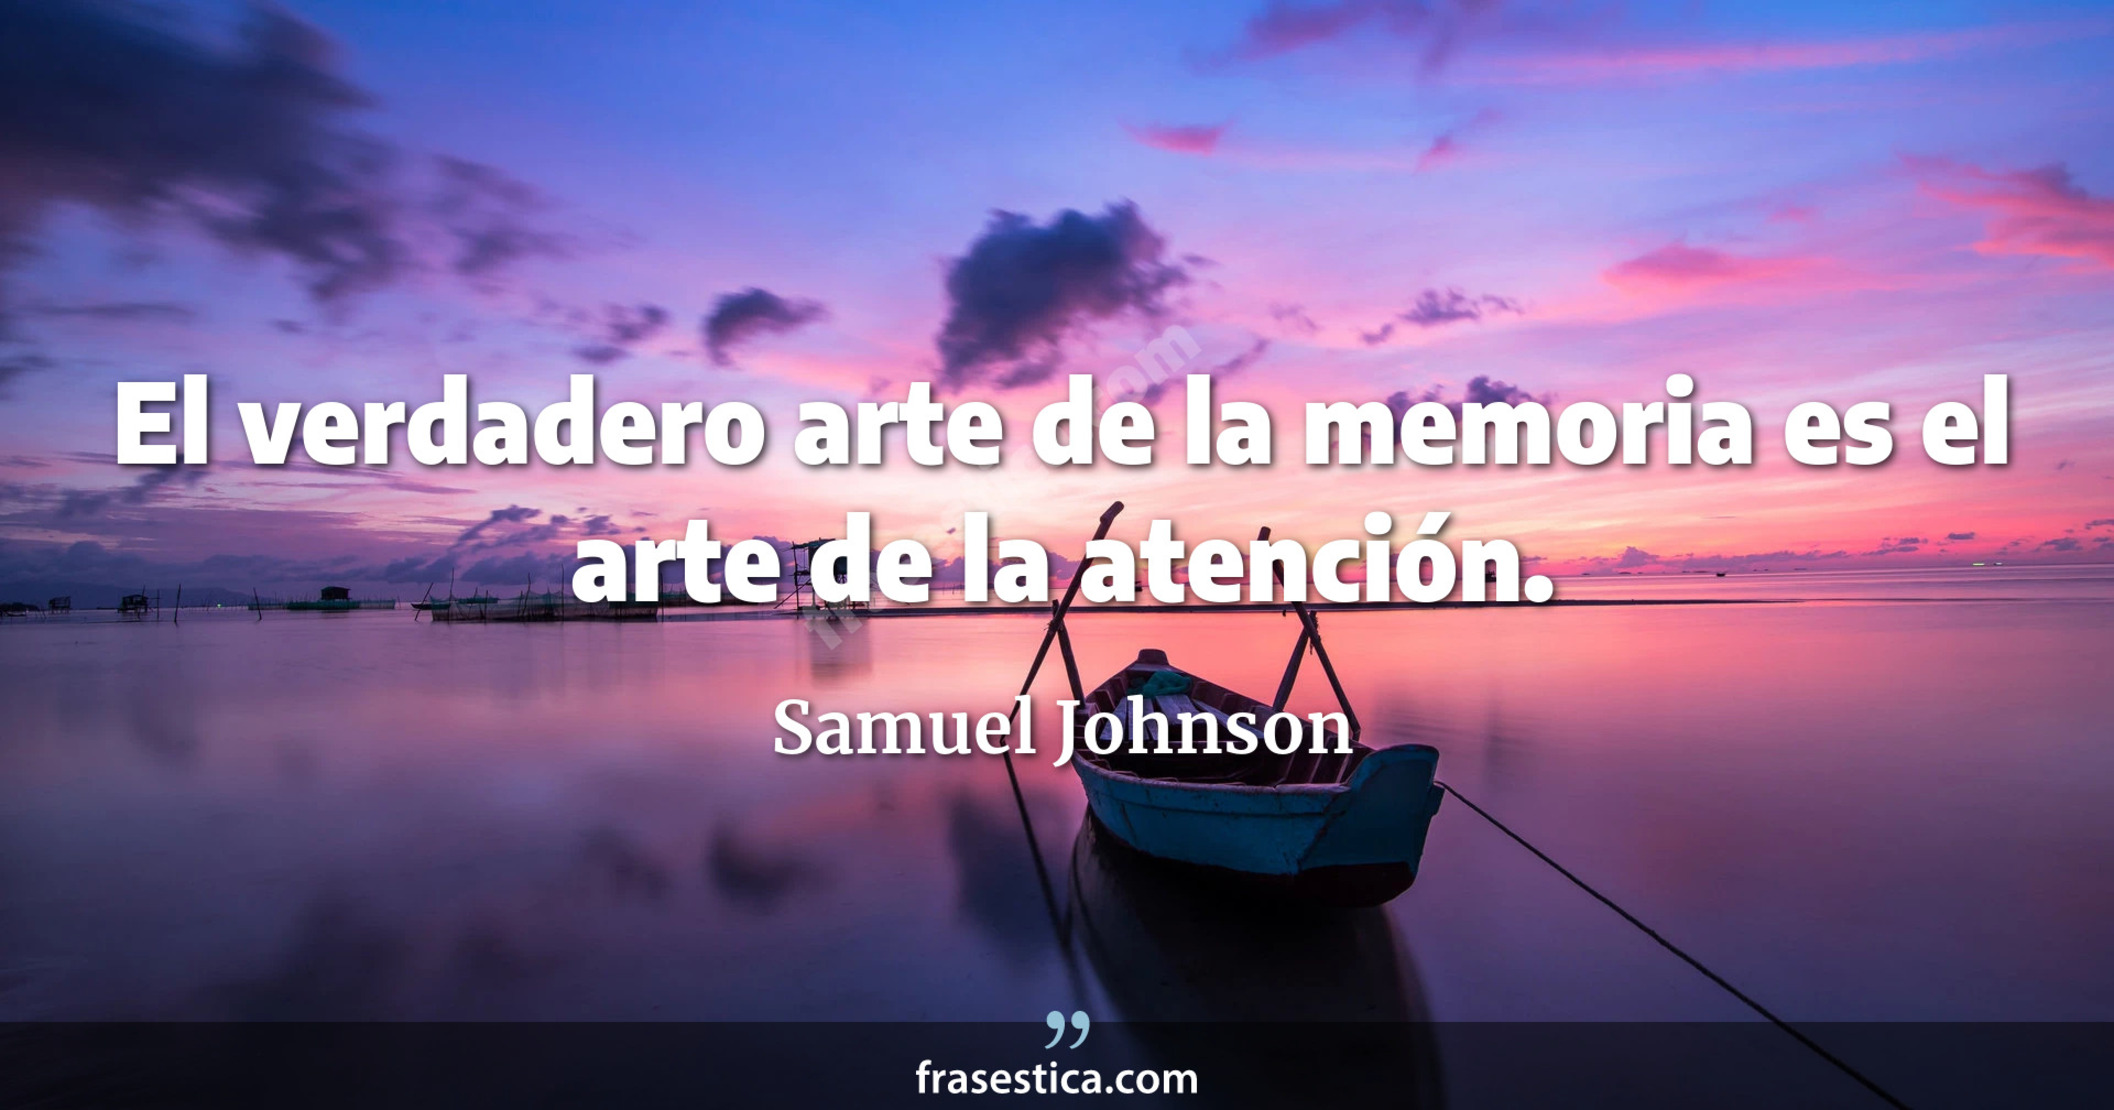 El verdadero arte de la memoria es el arte de la atención. - Samuel Johnson